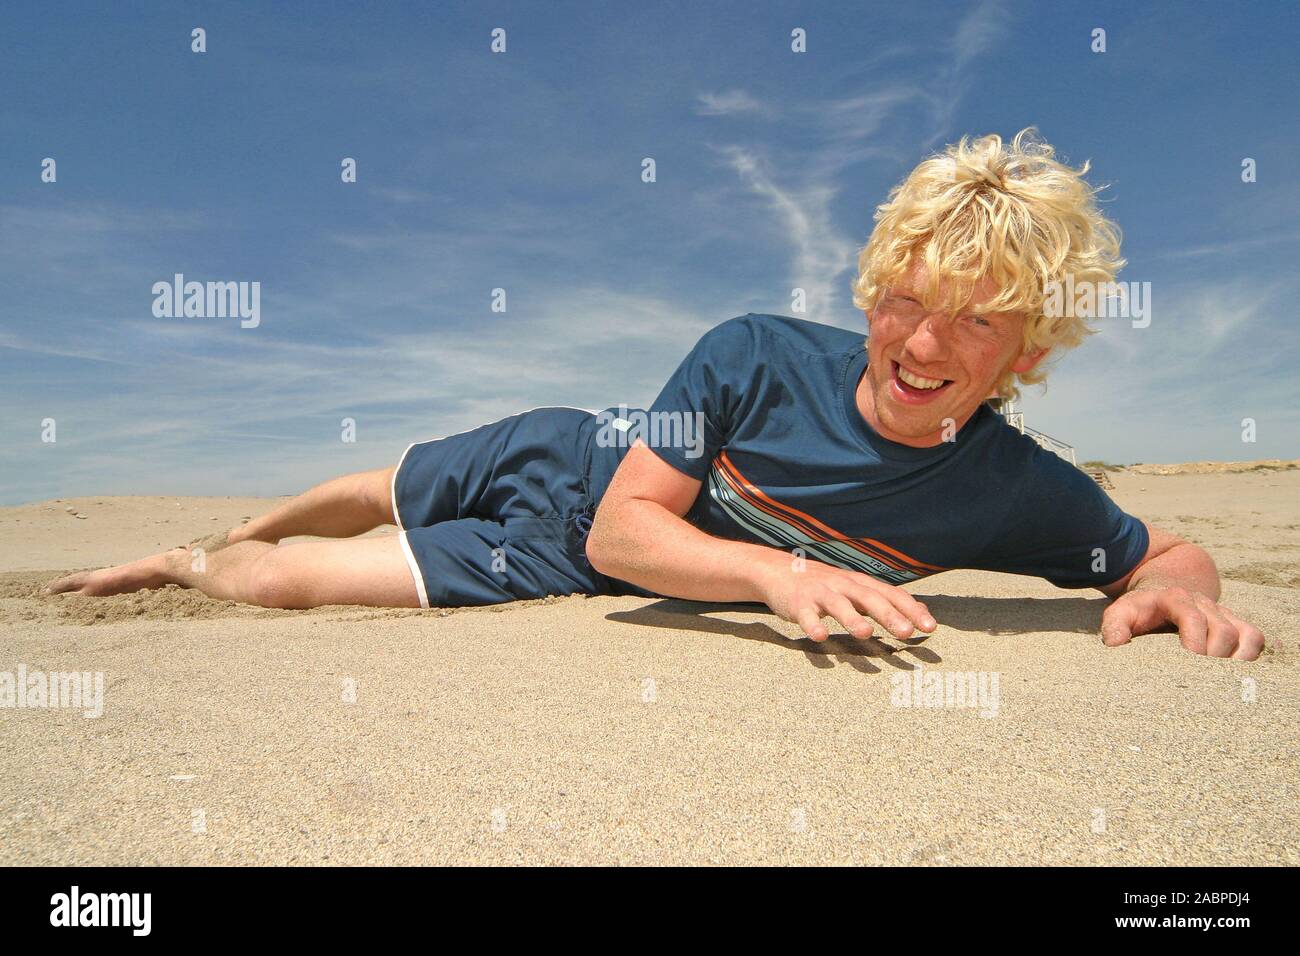 Junger Mann liegt am Strand Stock Photo